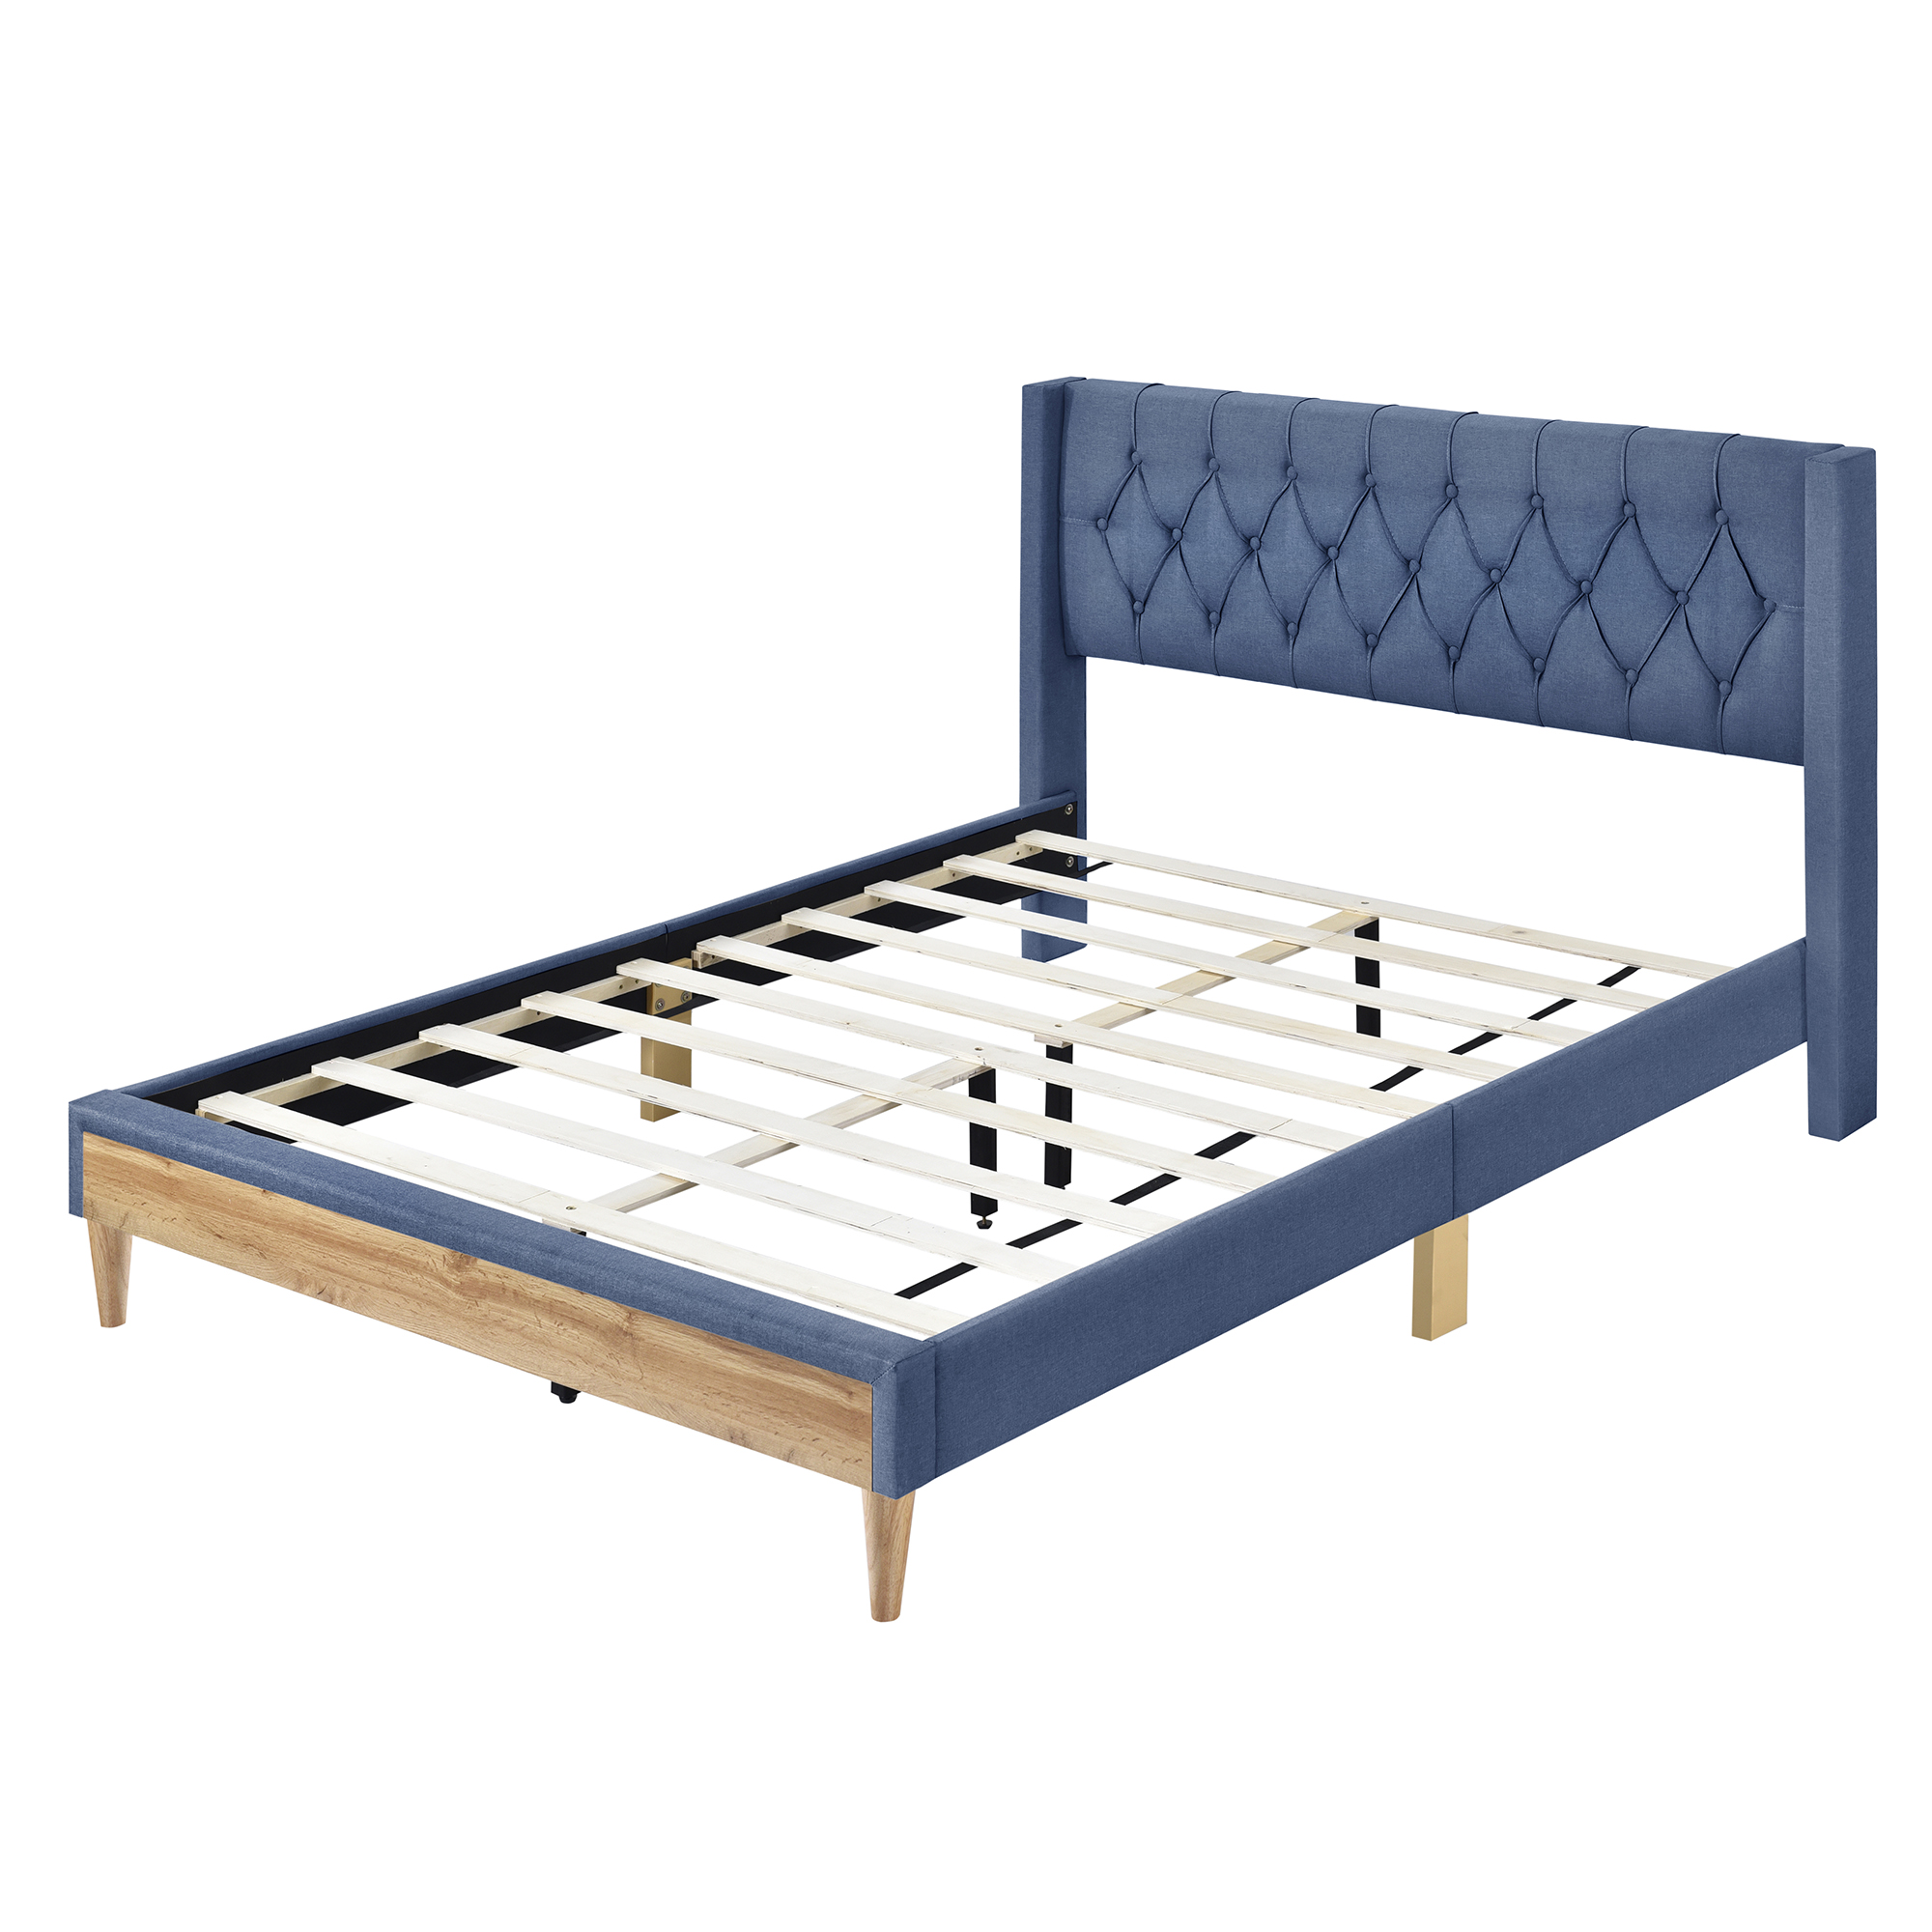 4-Pieces Bedroom Sets, Queen Size Platform Bed - HL000006AAC